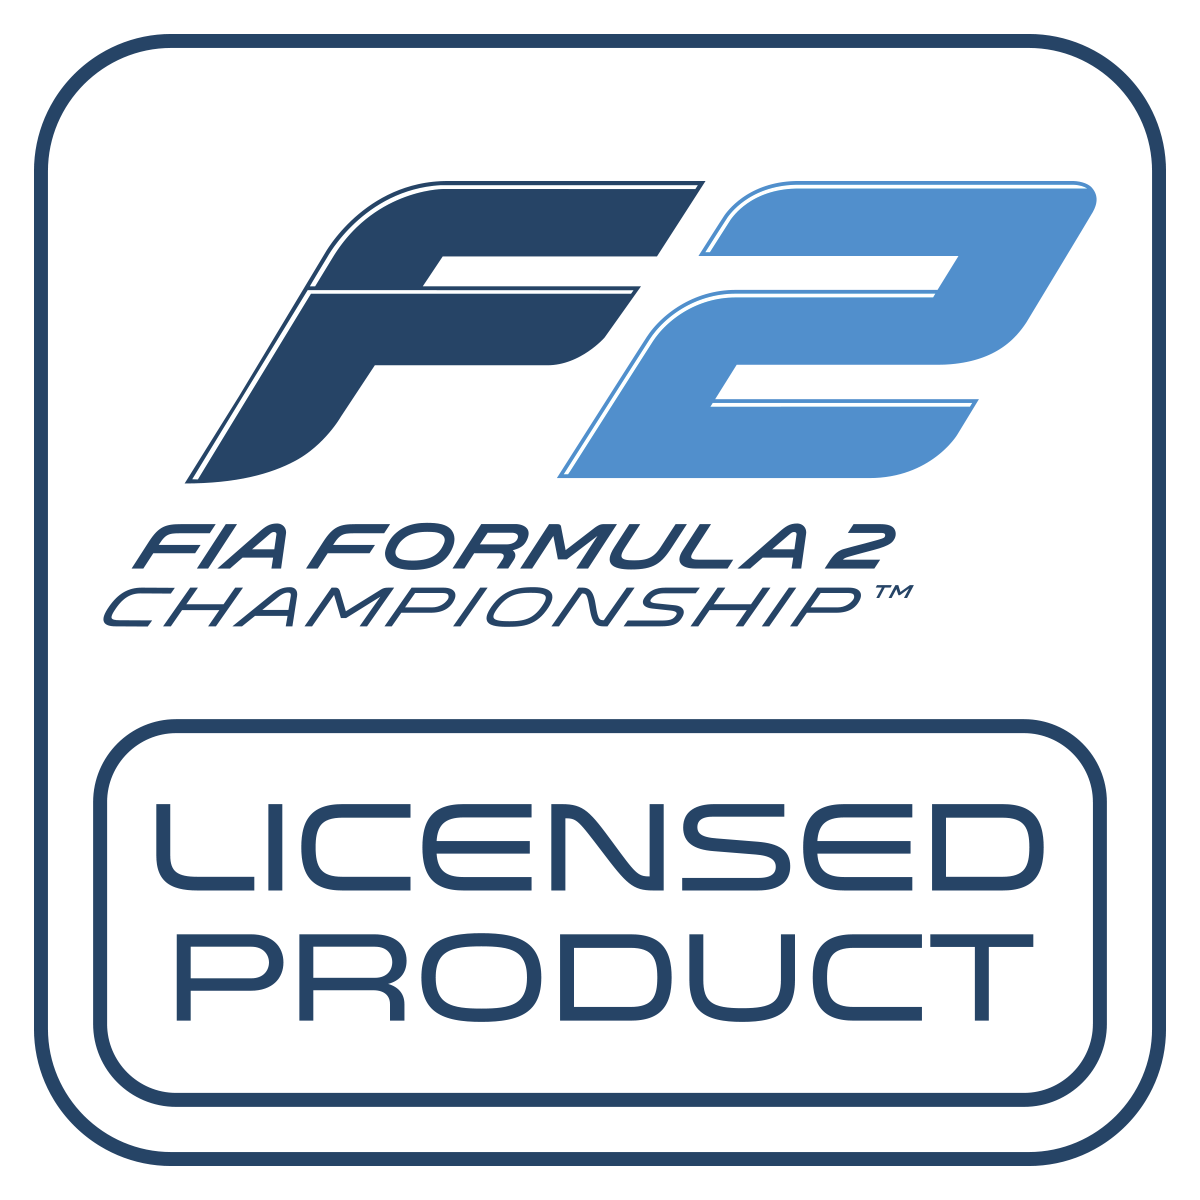 Logo de producto con licencia de F2